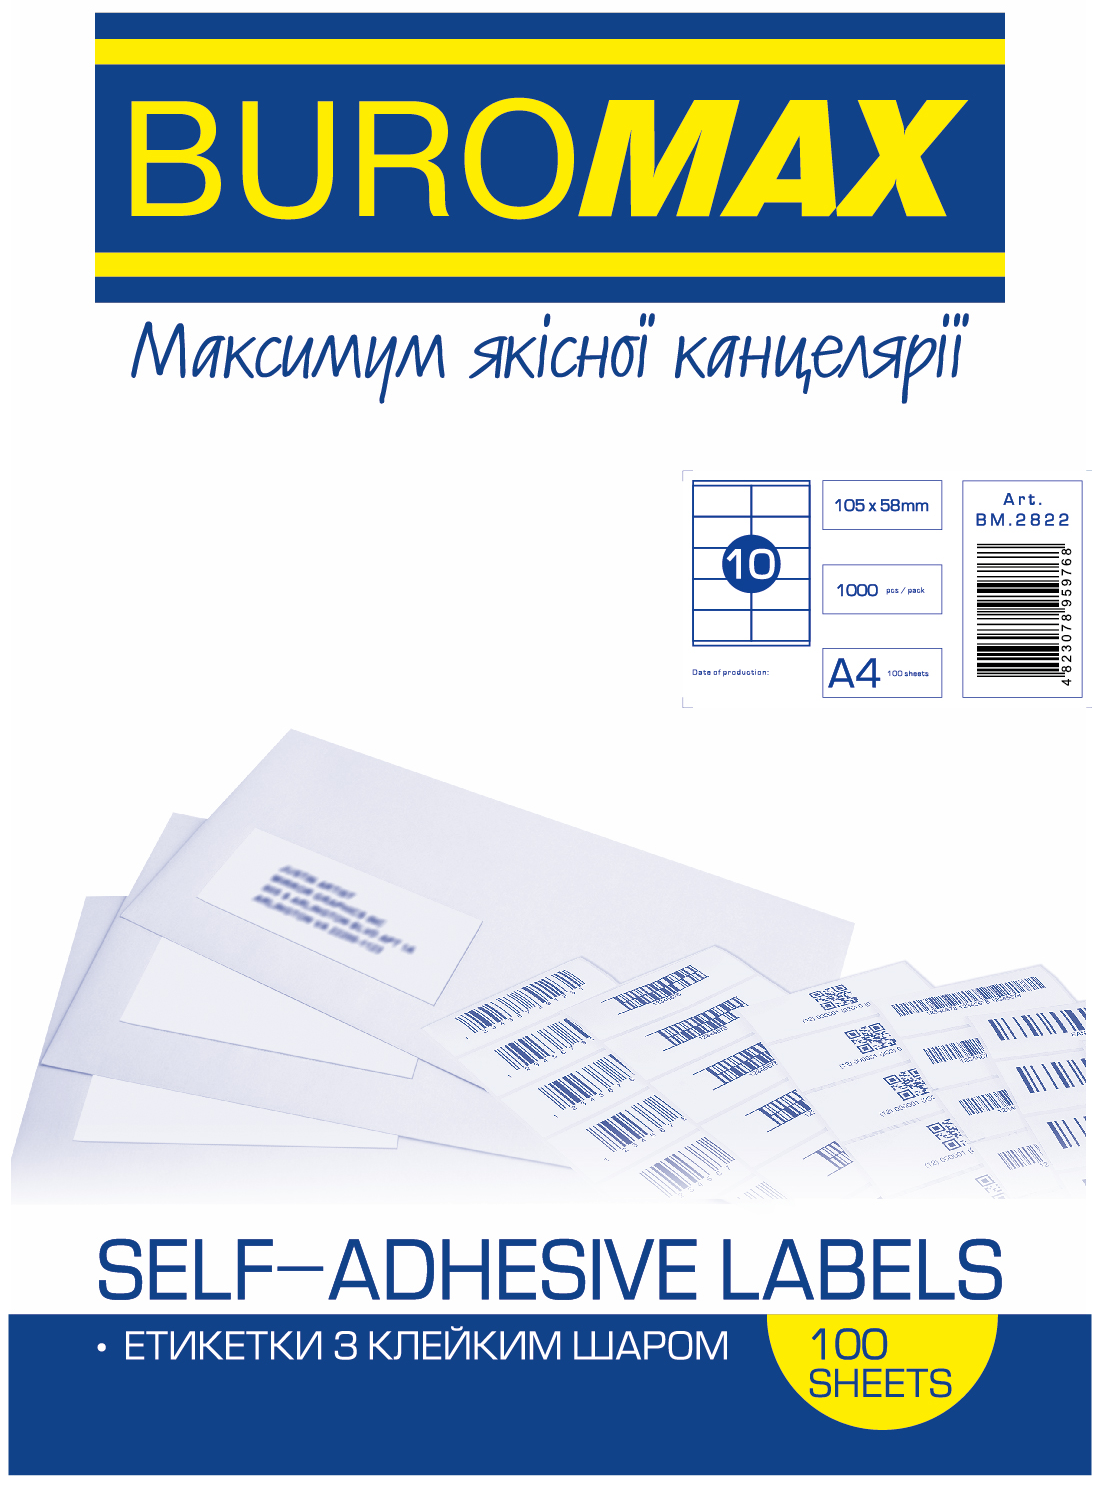 Етикетка самоклеюча Buromax 10 поділів 105*58мм А4 (100л) матова | Купити в інтернет магазині